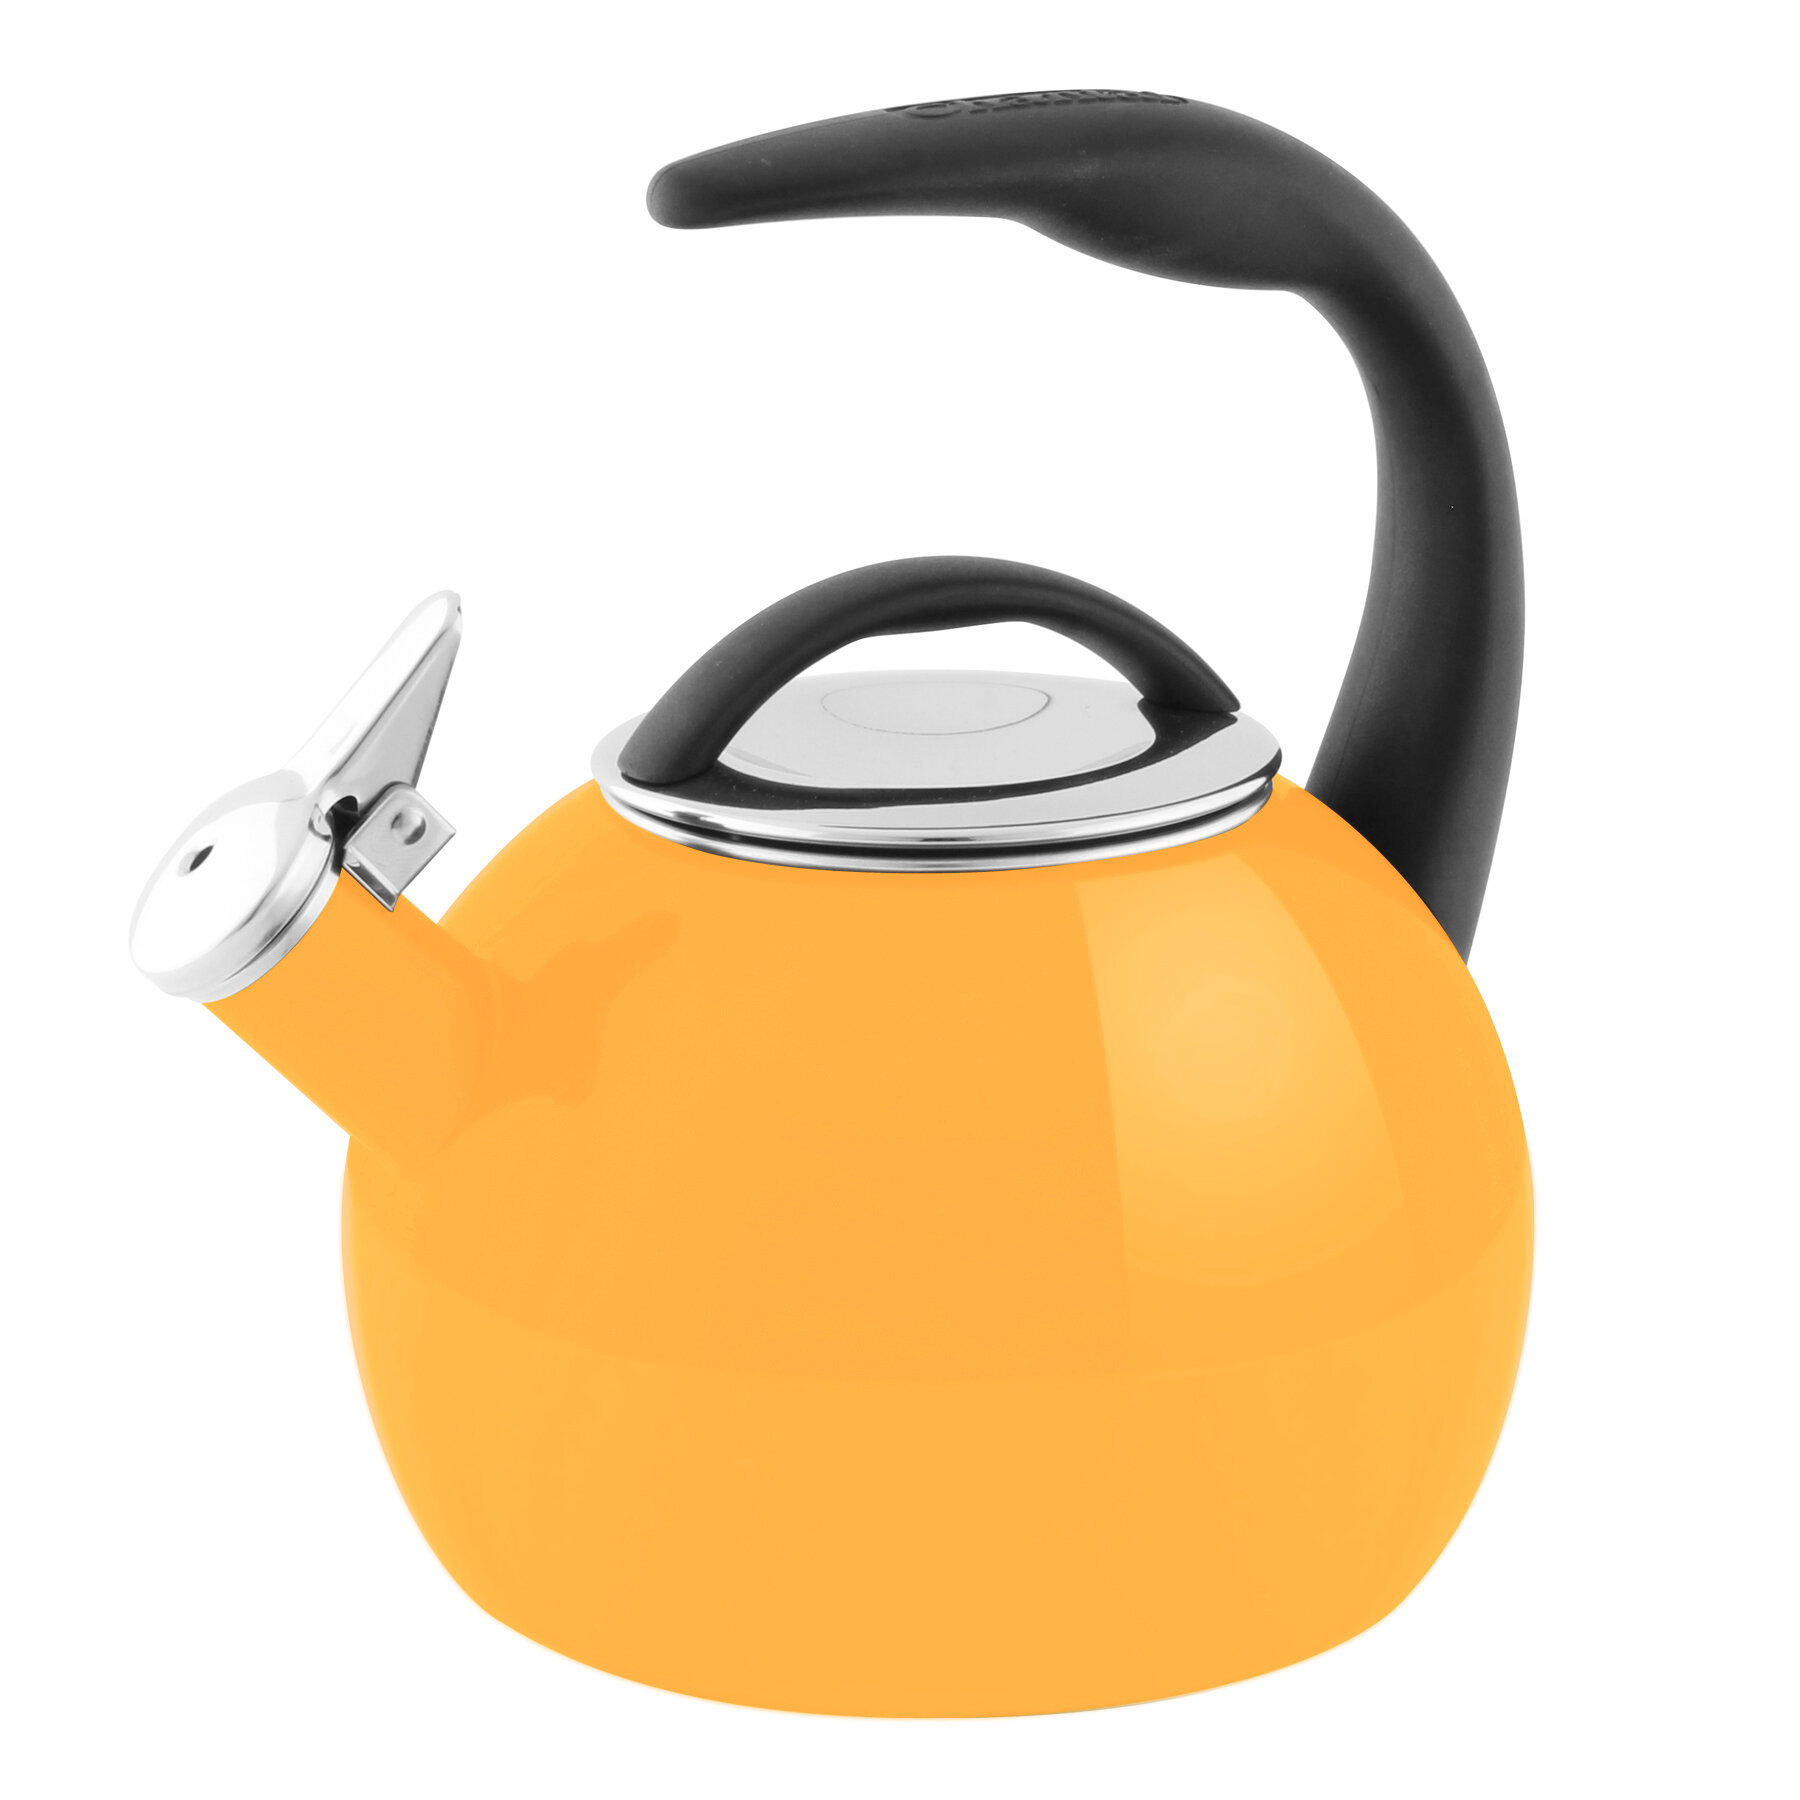 https://assets.wfcdn.com/im/41107464/compr-r85/1457/145780005/chantal-2-quarts-enamel-on-steel-whistling-stovetop-tea-kettle.jpg